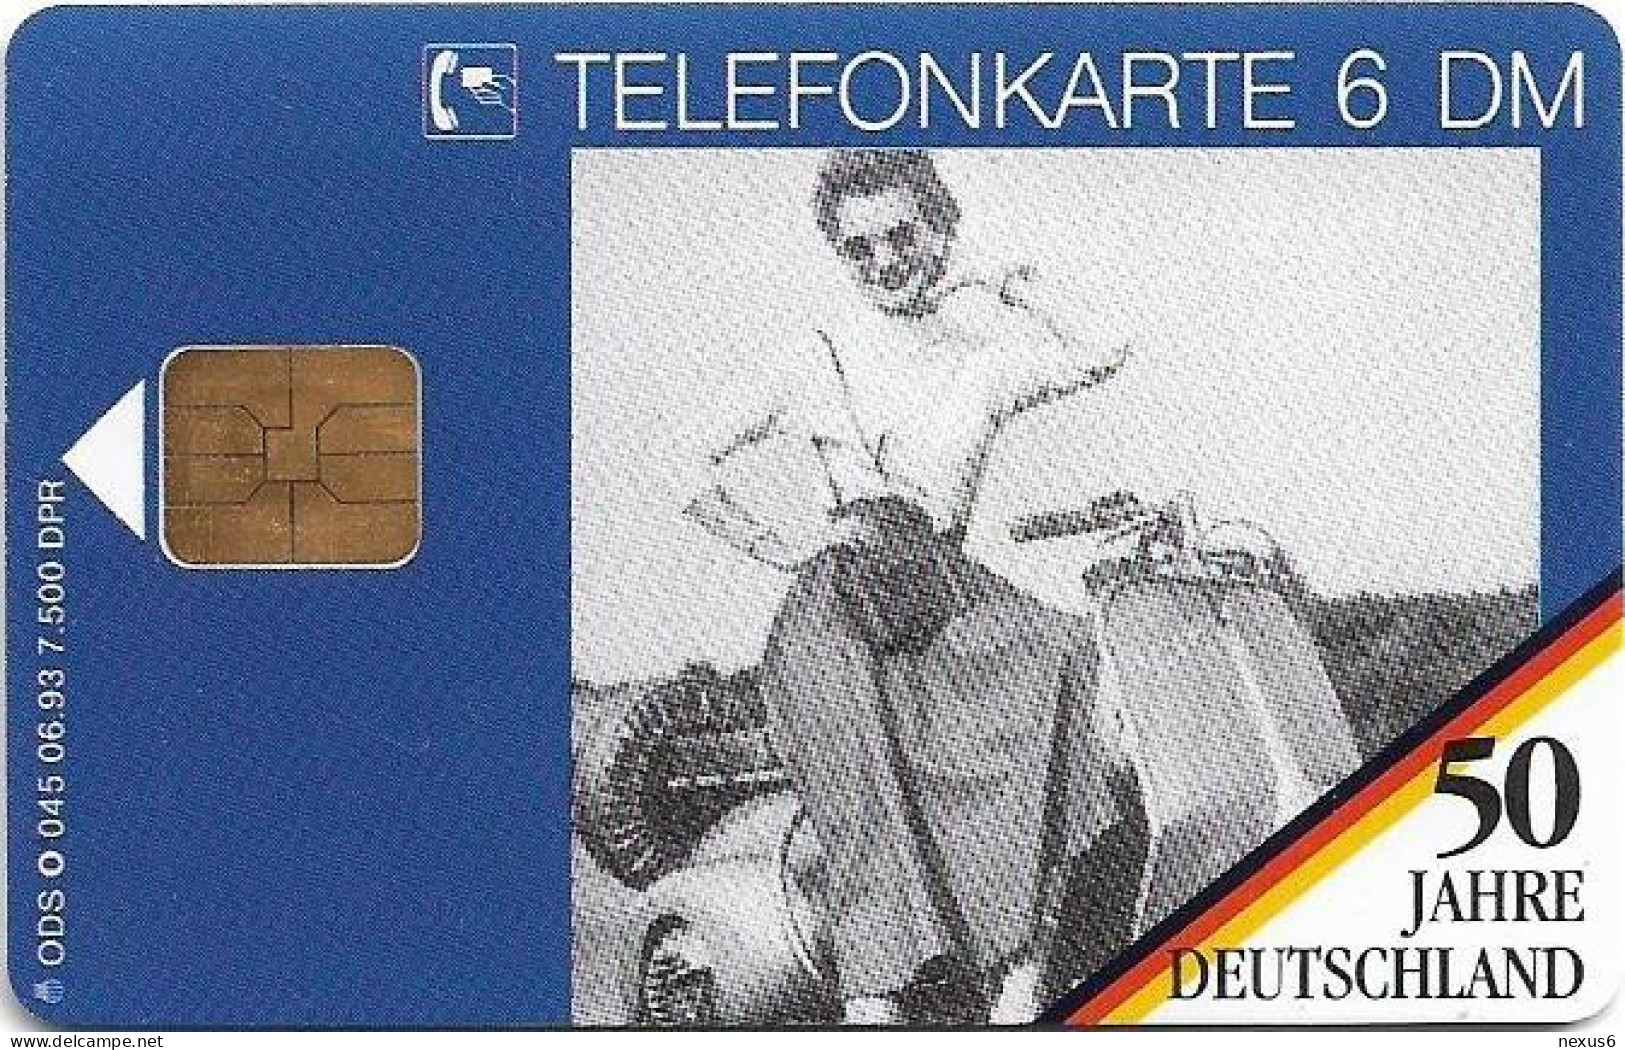 Germany - 50 Jahre Deutschland - Picknick Mit Motorroller 2 - O 0045 - 06.1993, 6DM, 7.500ex, Mint - O-Series: Kundenserie Vom Sammlerservice Ausgeschlossen